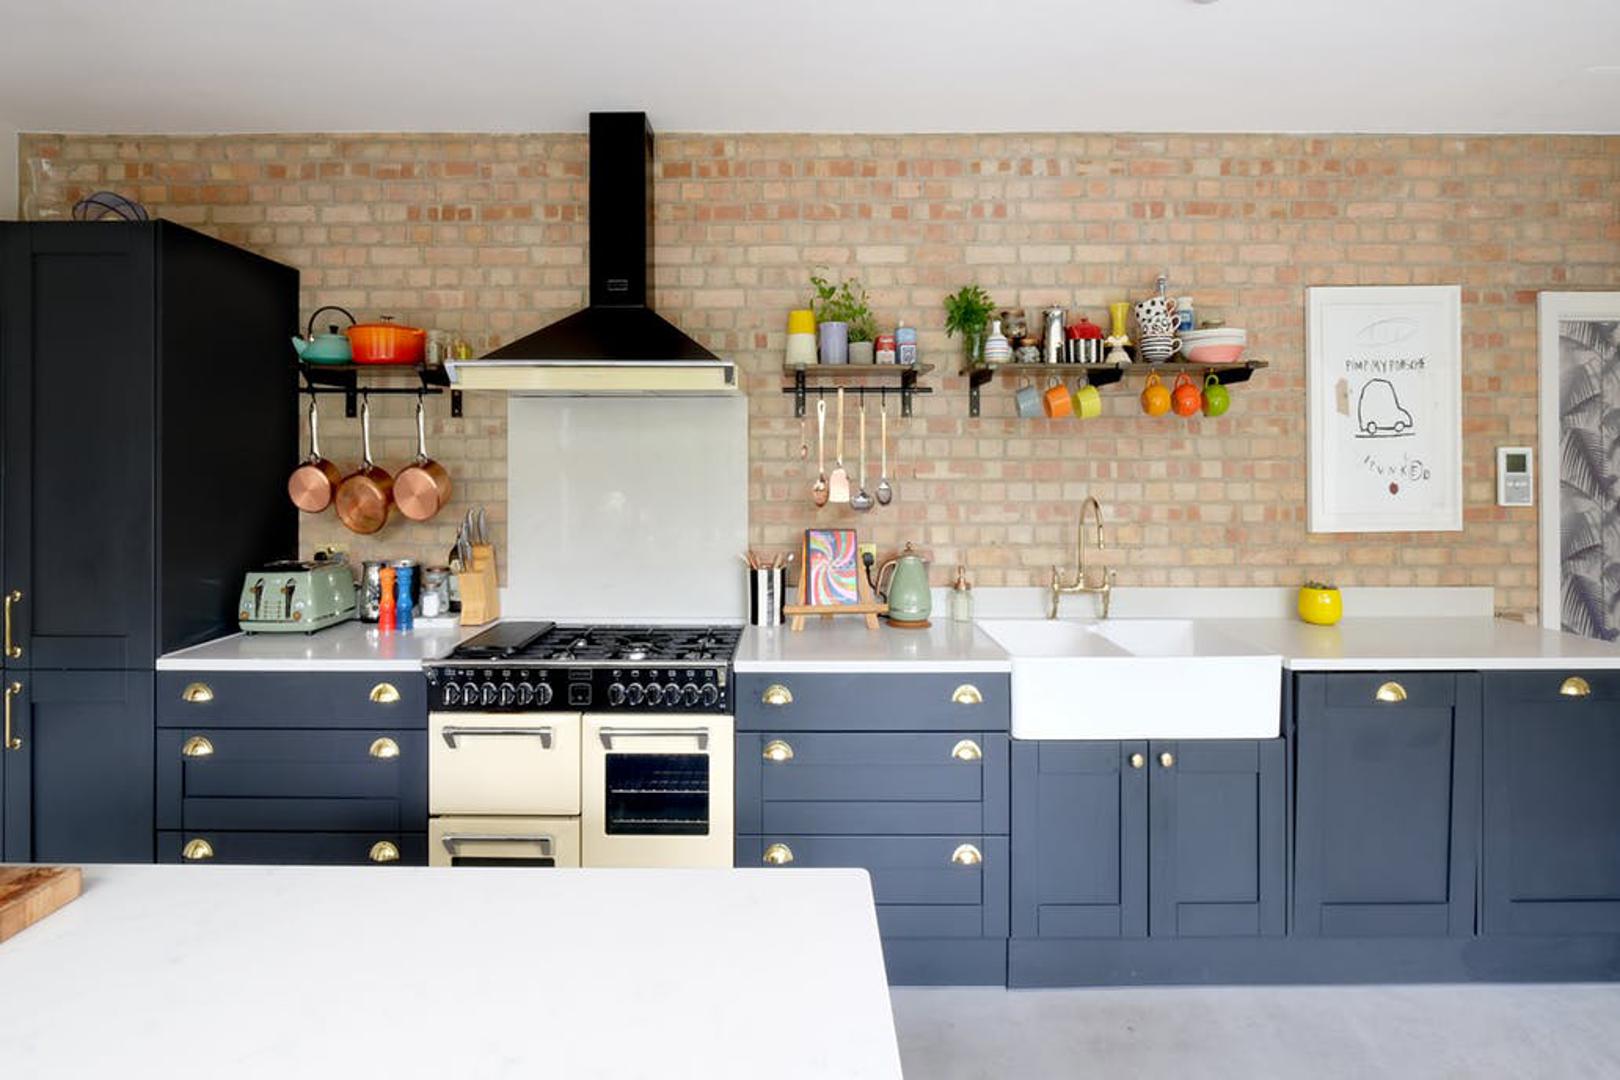 Kuhinja je opremljena modernim aparatima, a zid od cigle daje željenu atmosferu, u popularnom industrijskom stilu